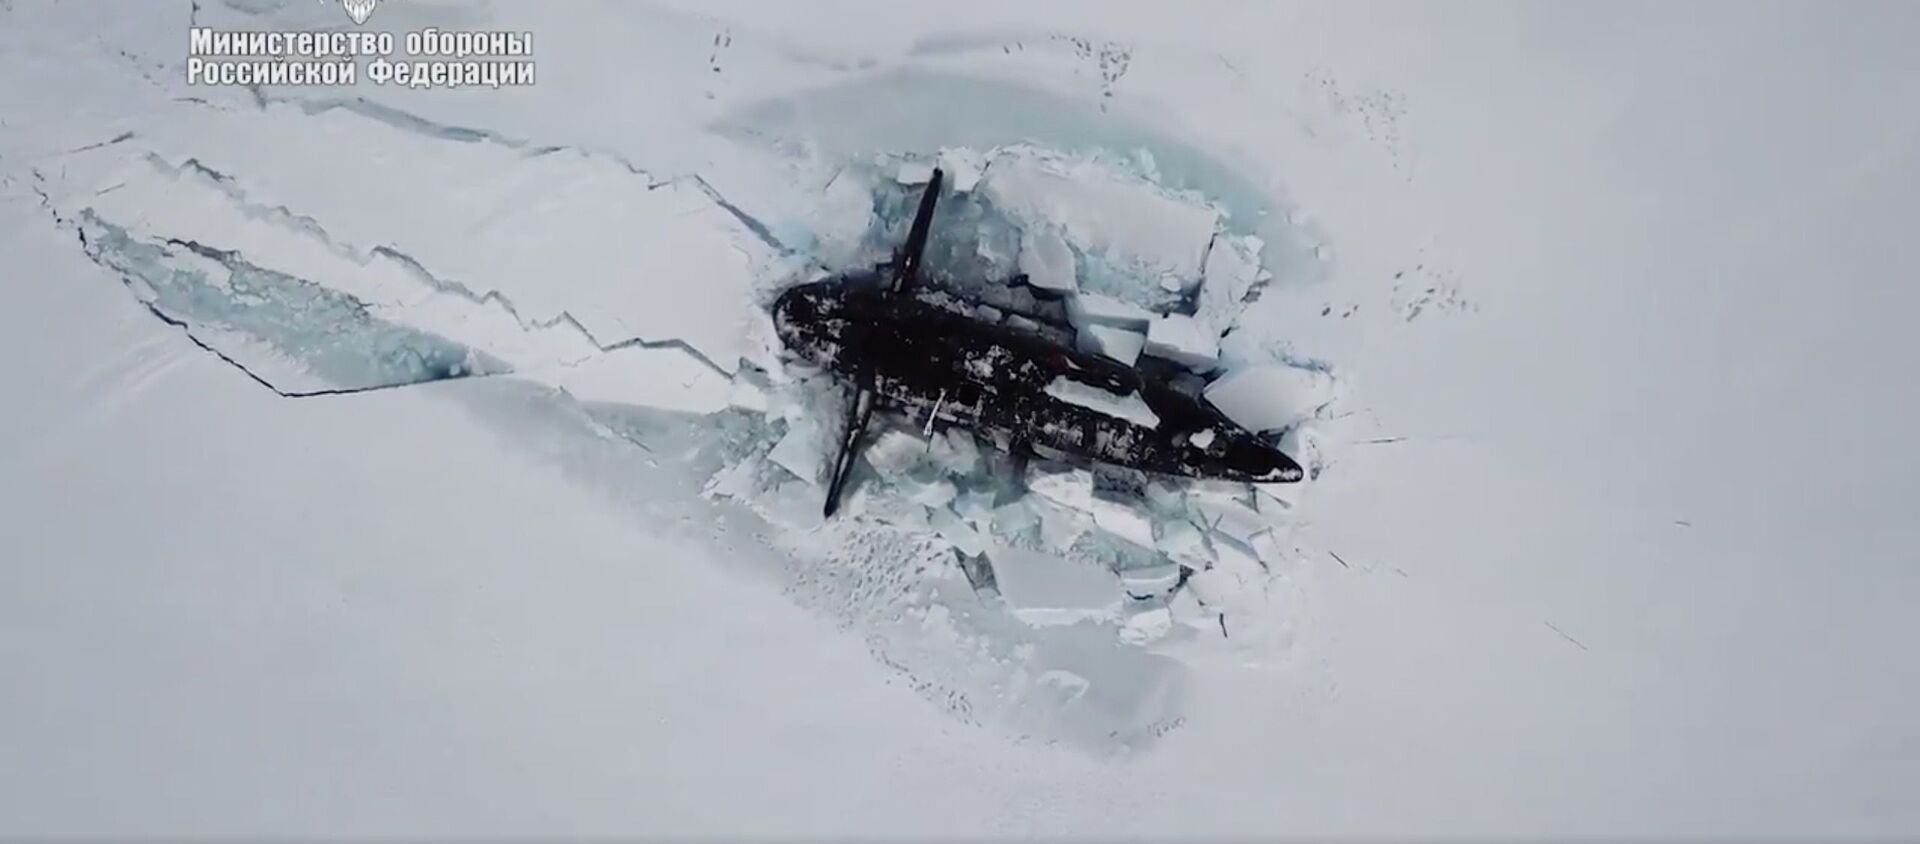 ロシア潜水艦の北極での演習を白熊が邪魔する - Sputnik 日本, 1920, 15.04.2021